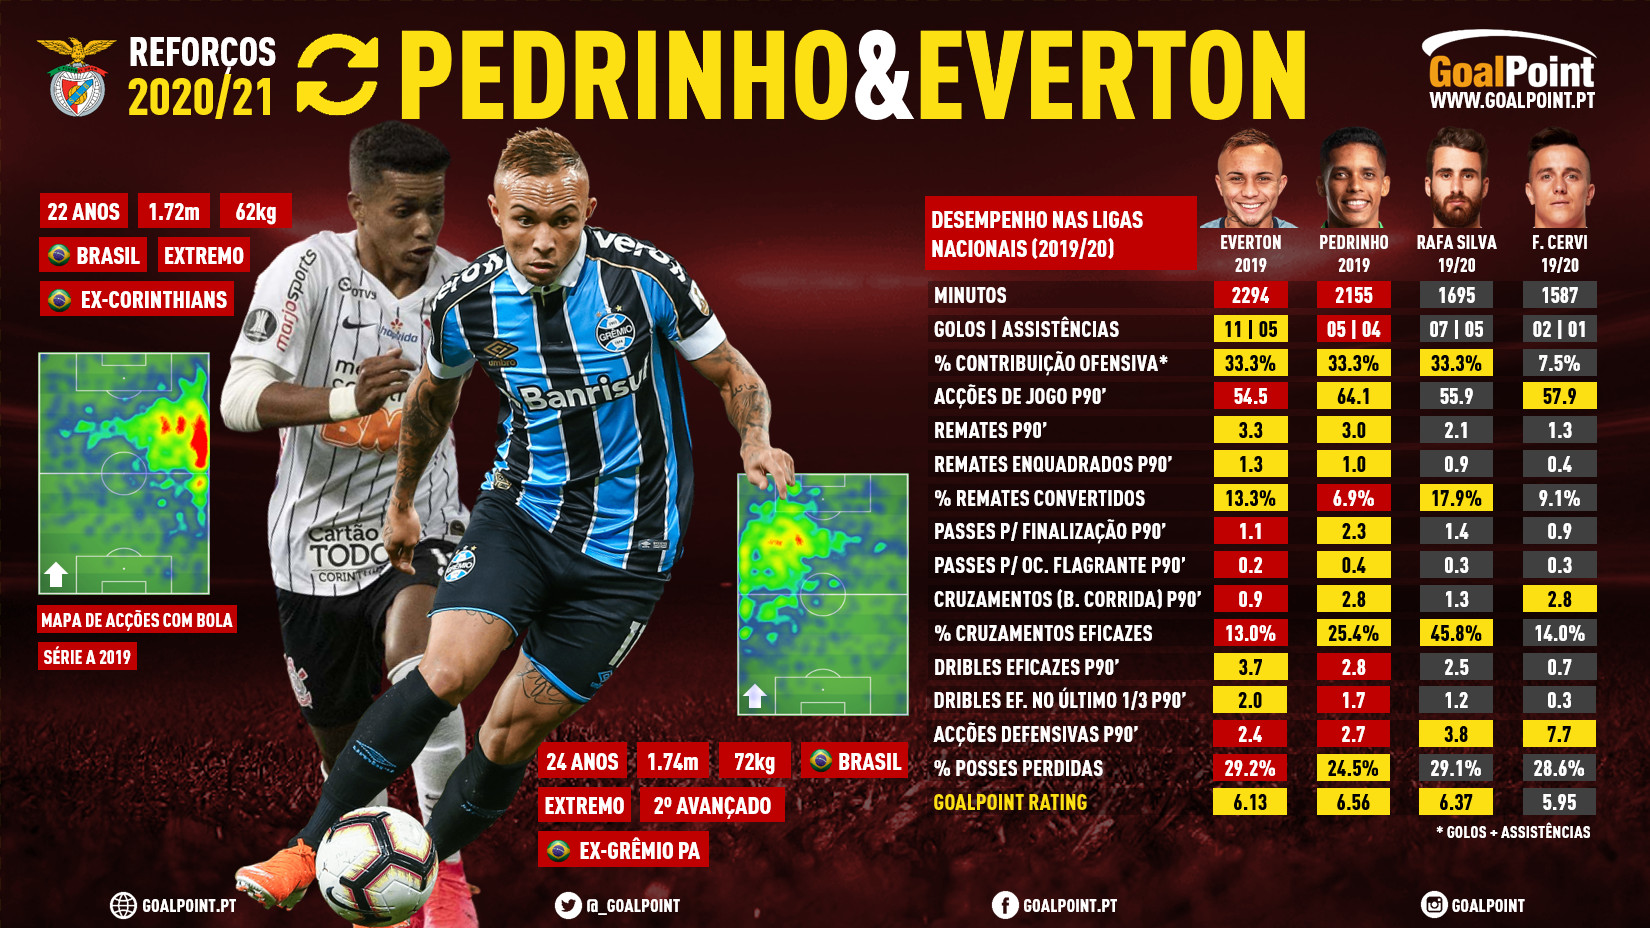 GoalPoint-Reforcos-201920-Benfica-Everton-Cebolinha-Pedrinho-2-infog